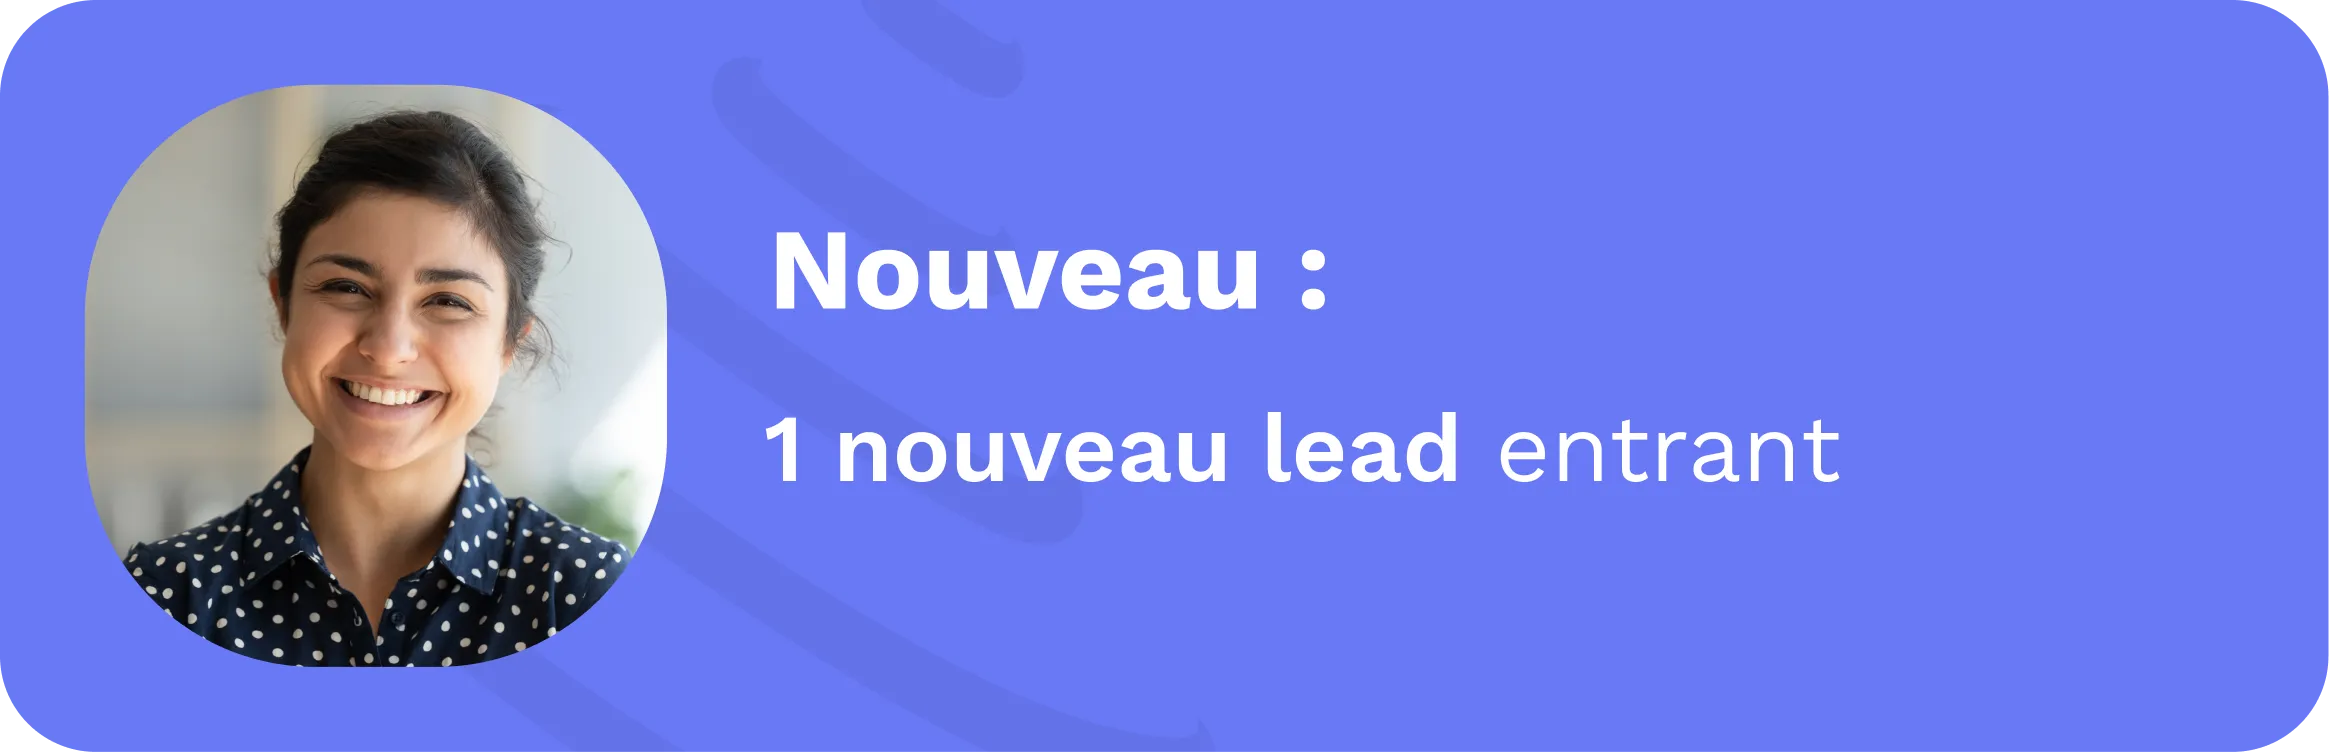 notification nouveau lead